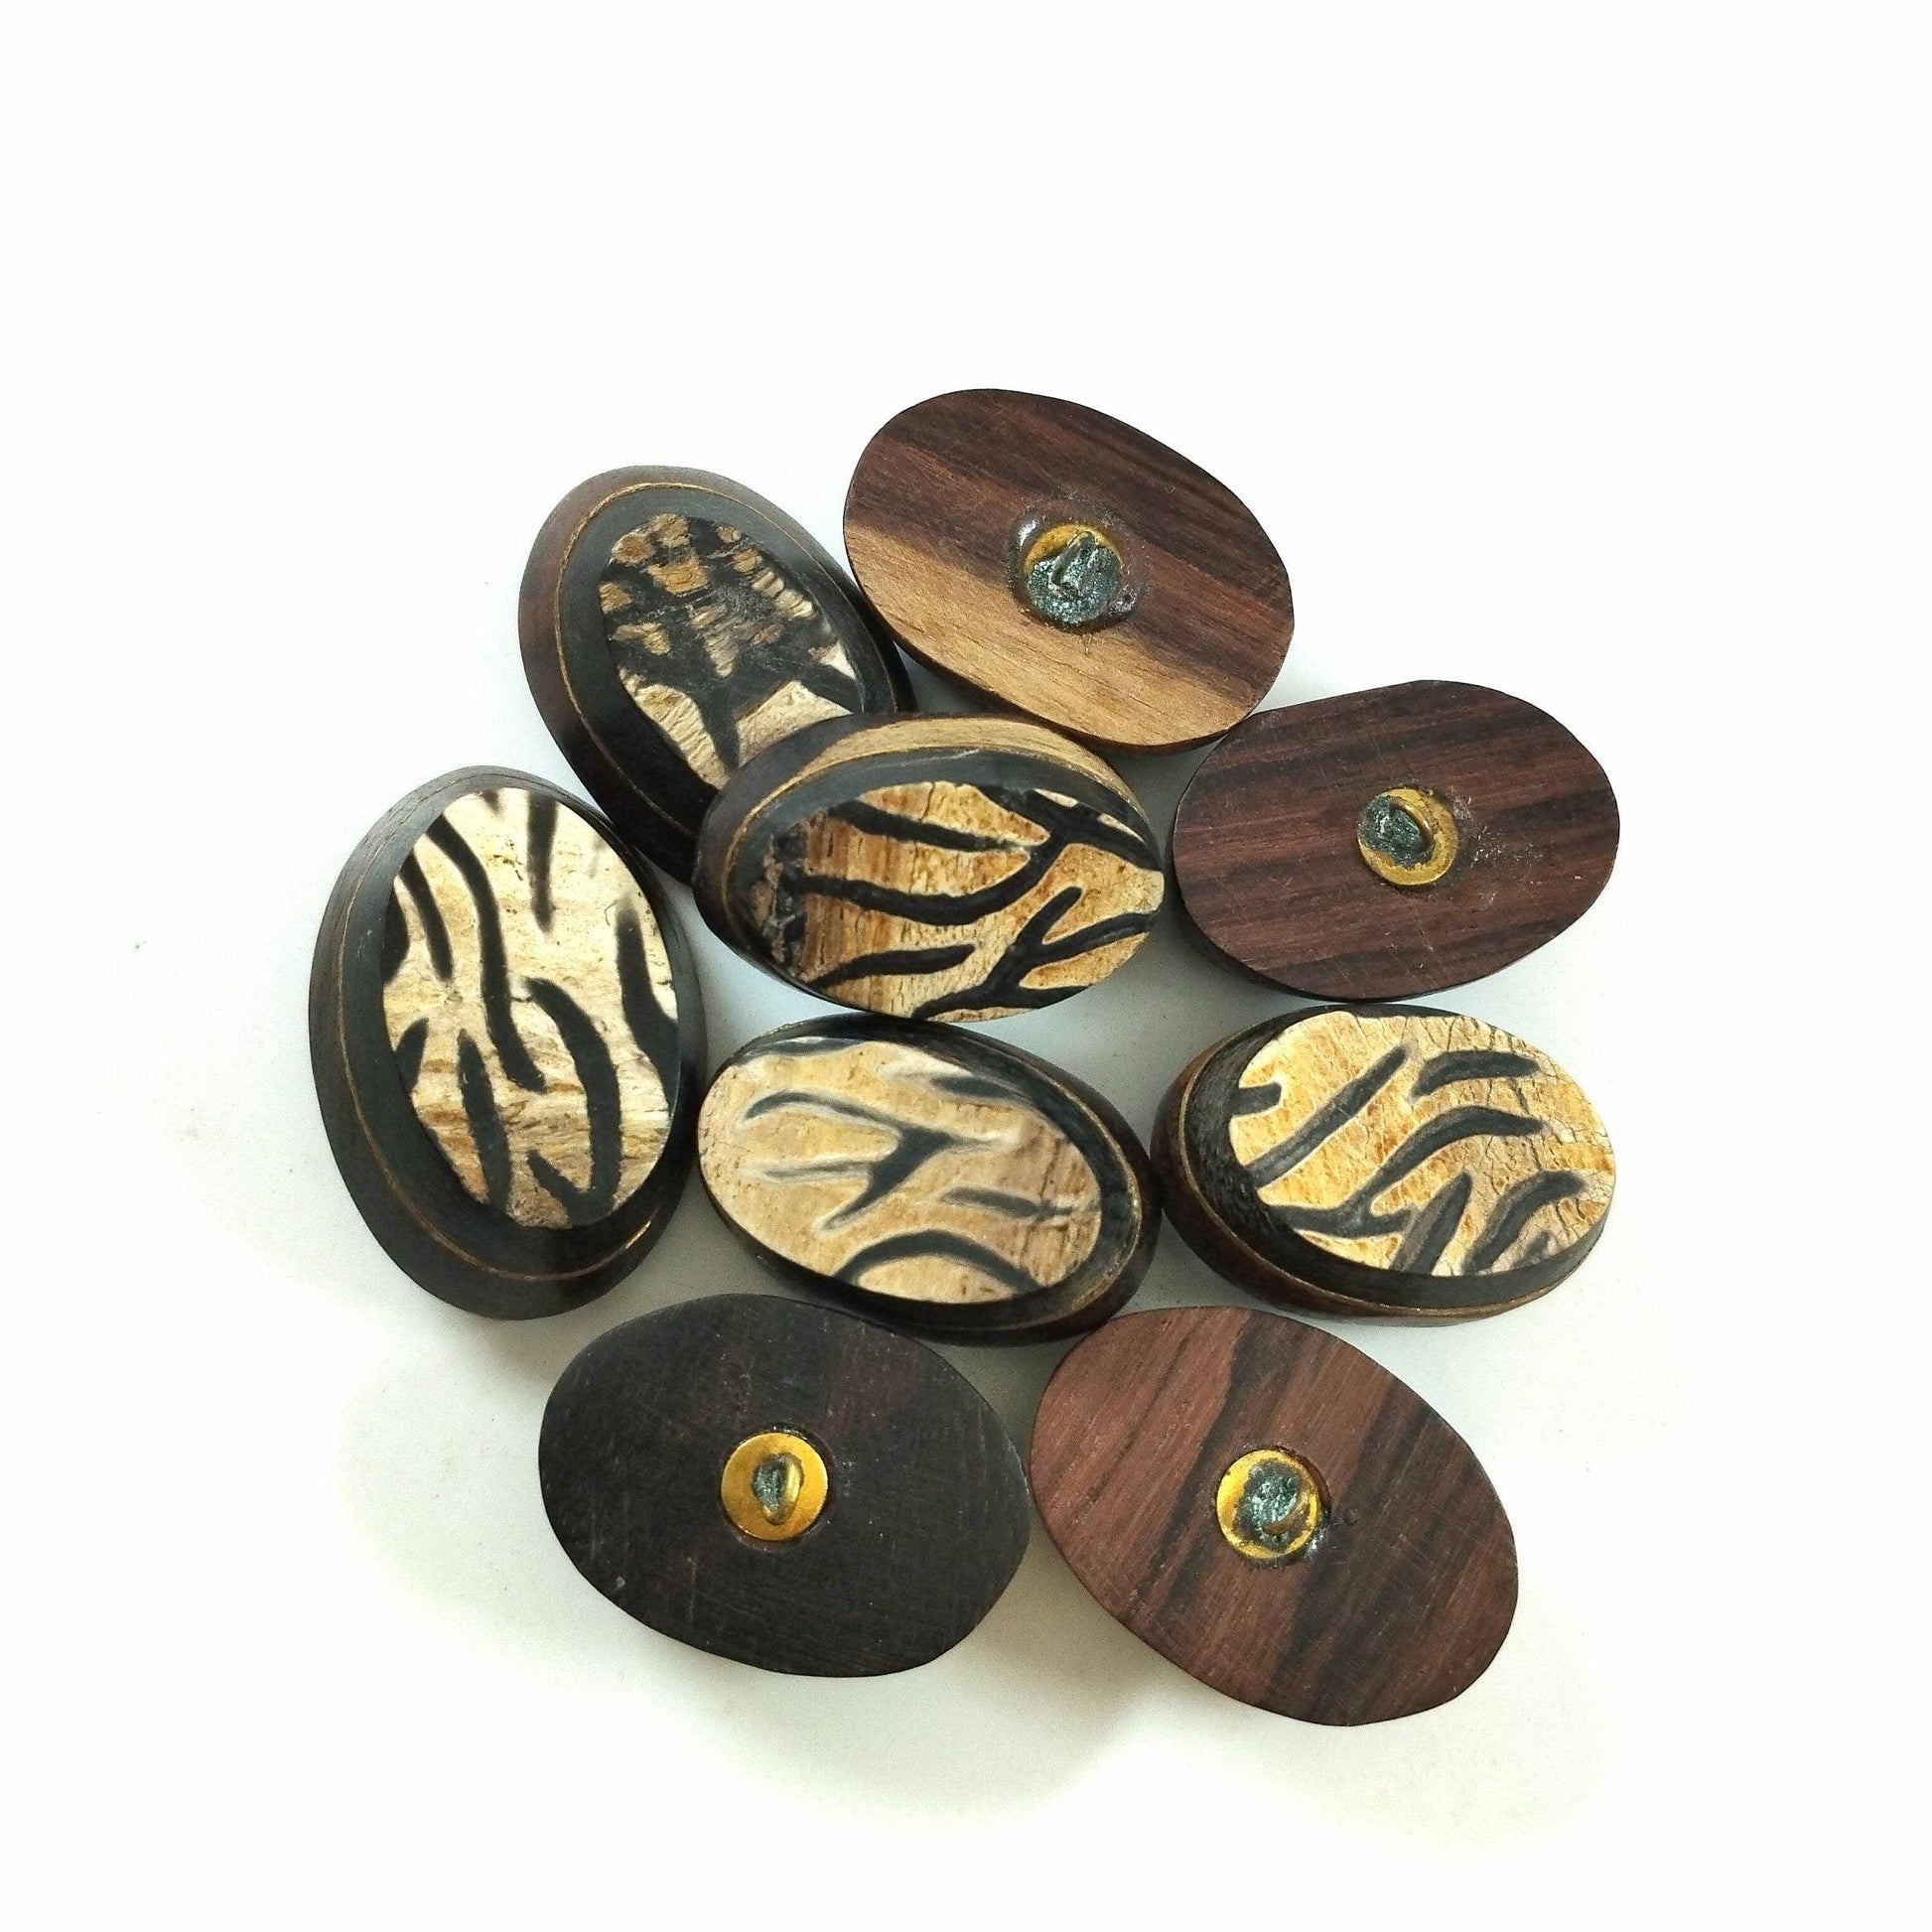 Bottone in legno di forma ovale, tornito e decorato a mano. Anni settanta - Merceria Rispoli